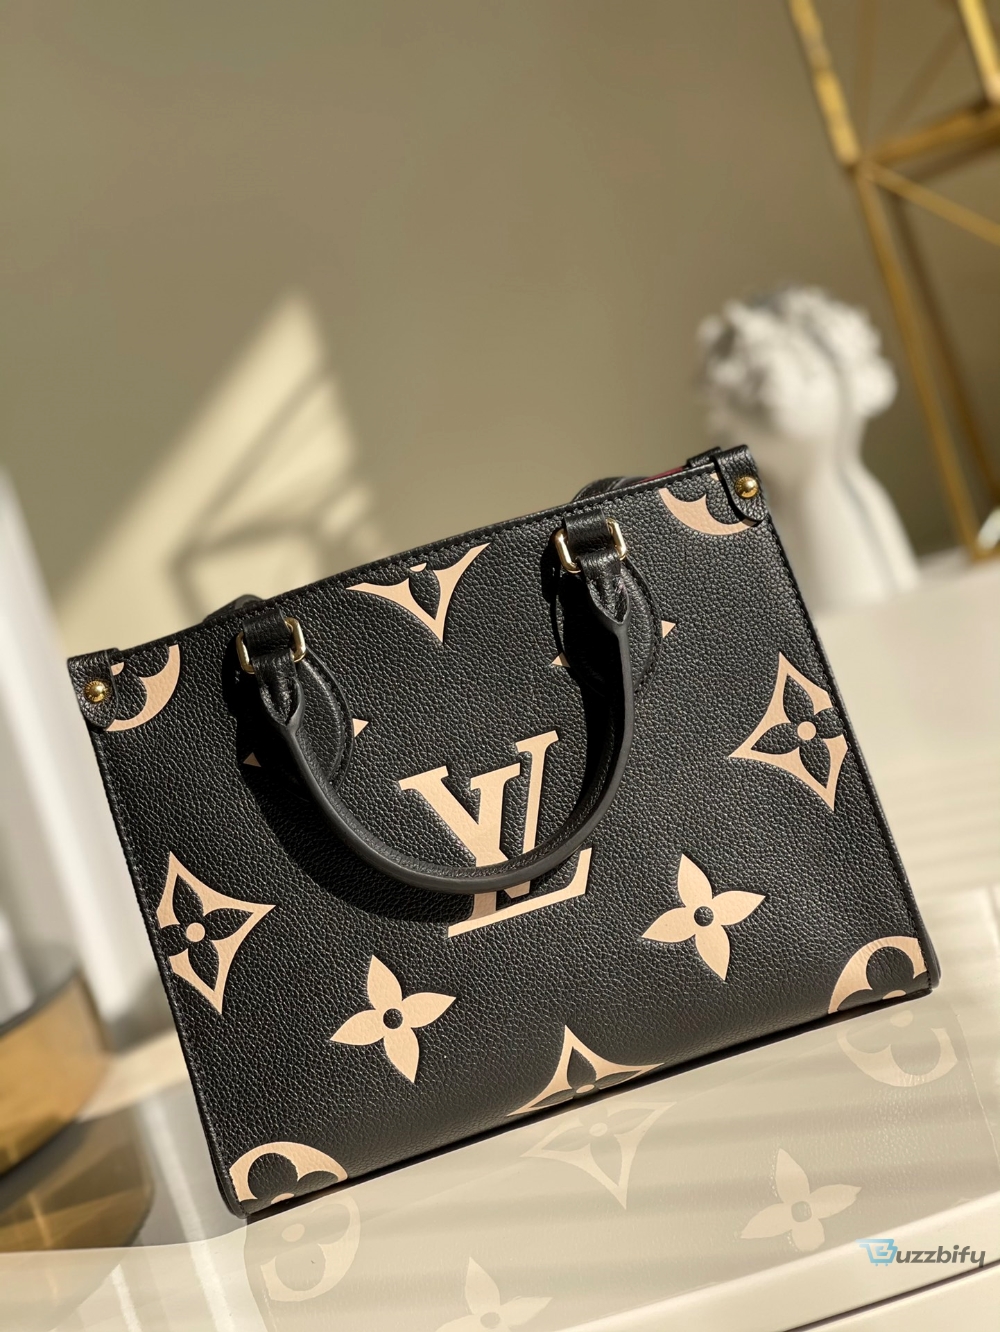 Louis Vuitton Handle Bag 25cm Black - 7777